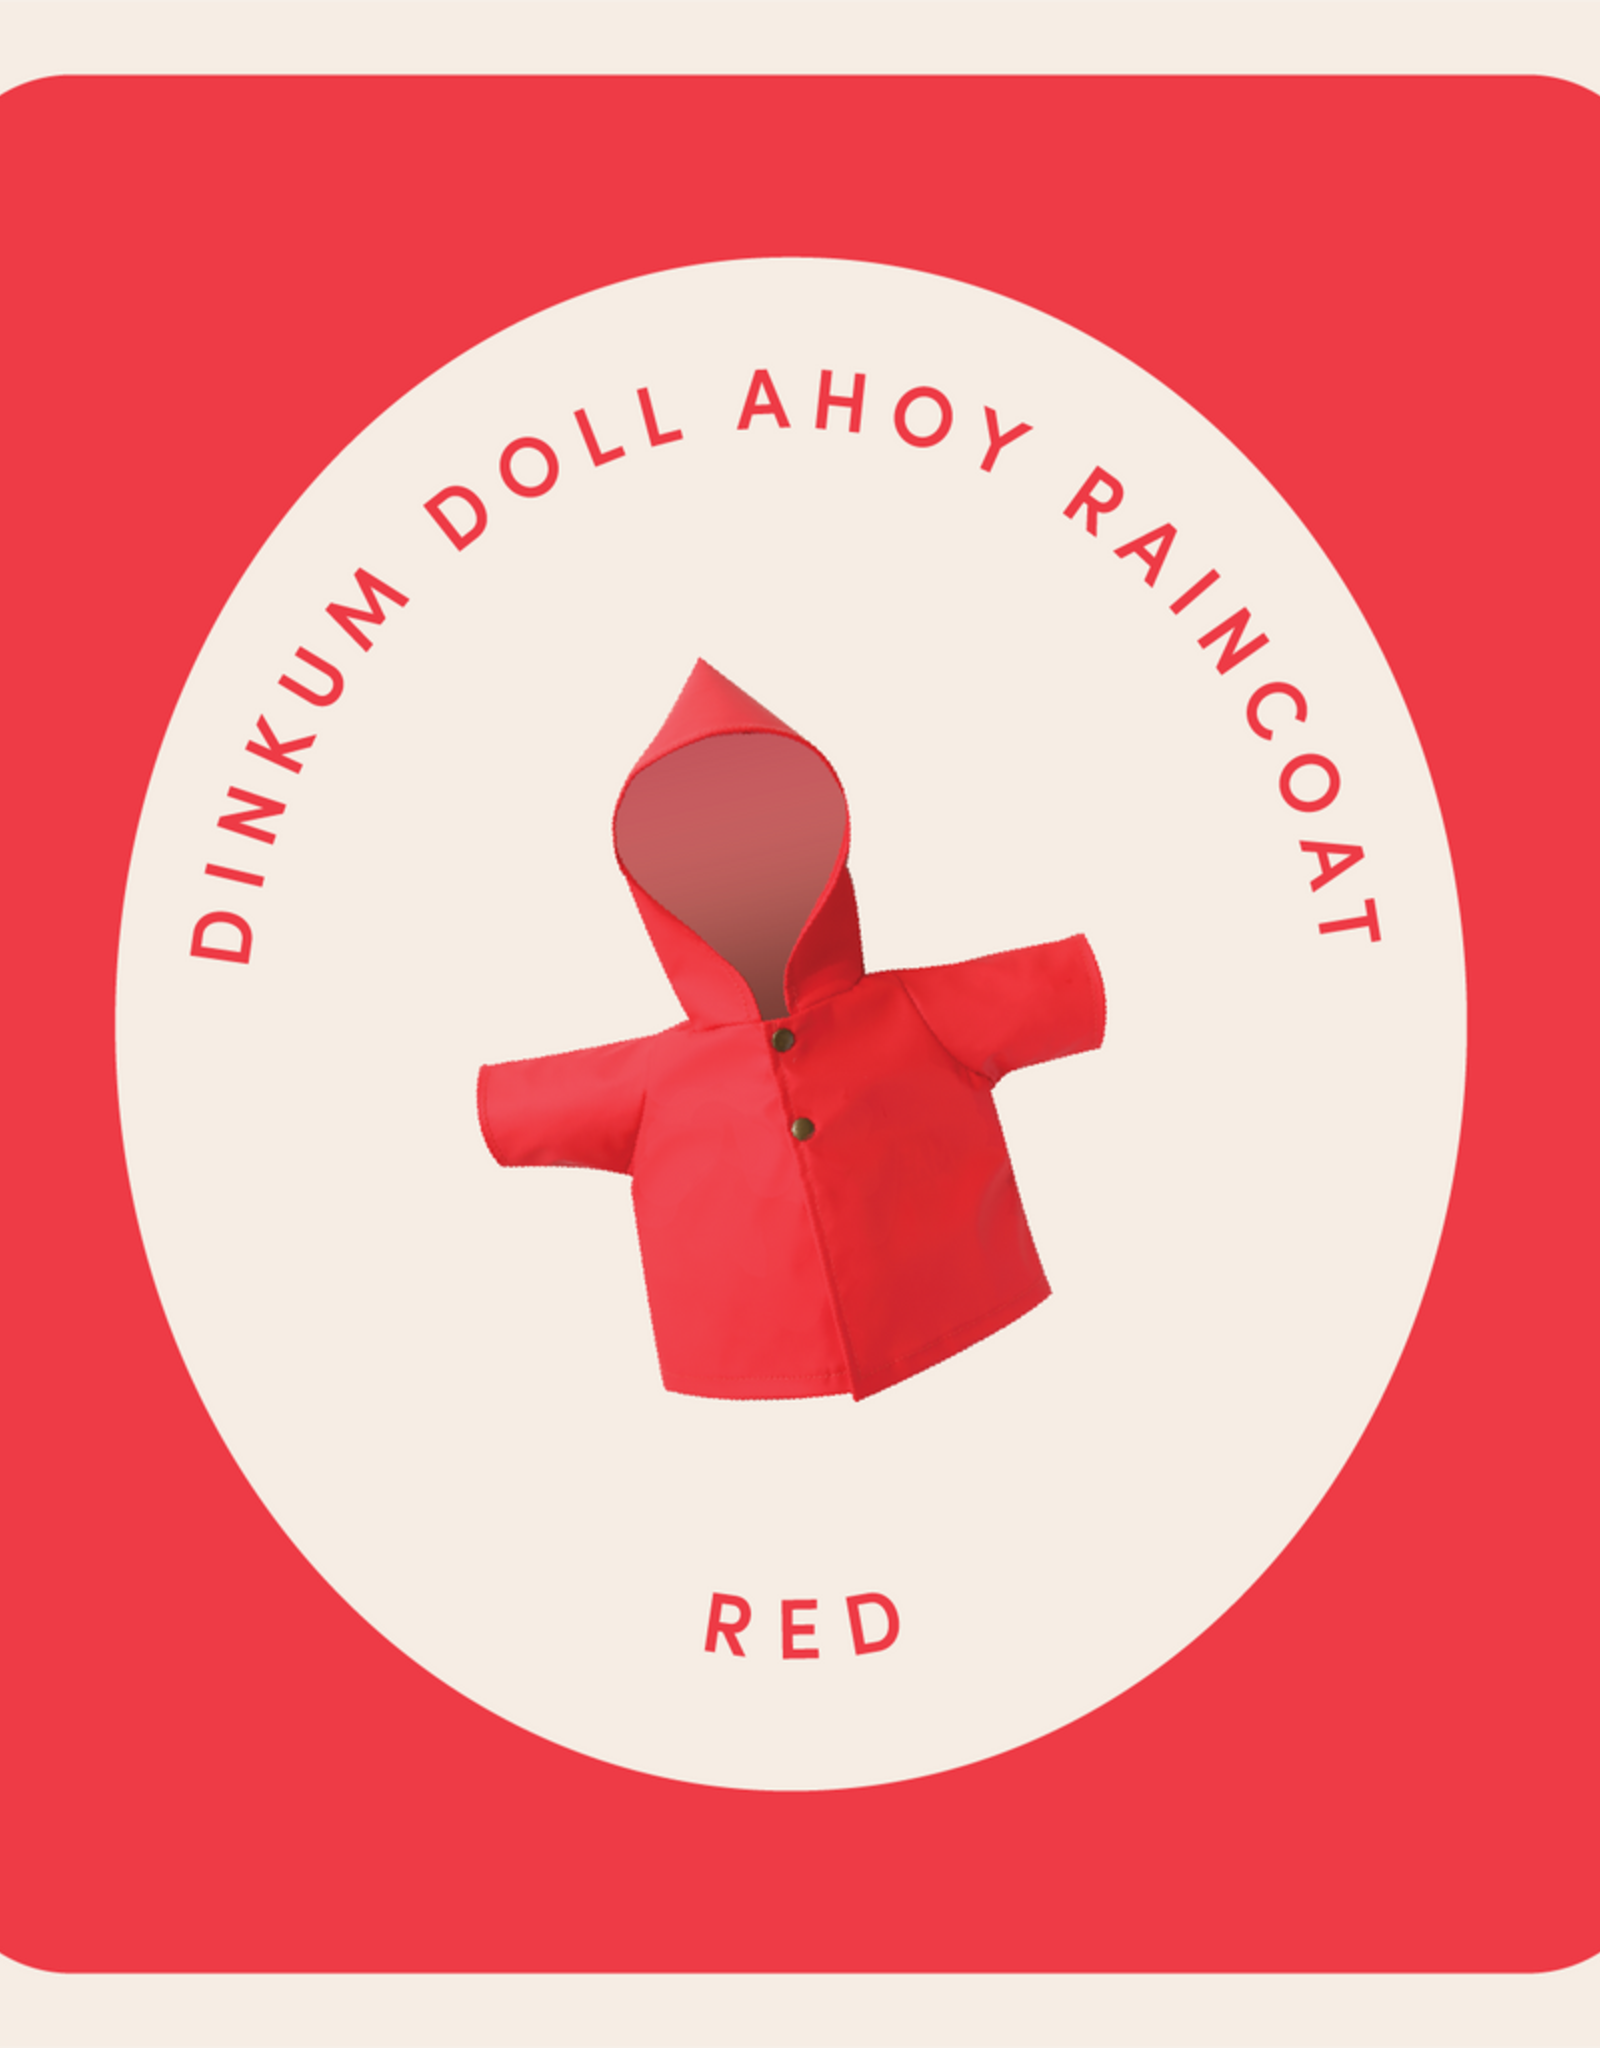 Olli Ella Olli Ella - Dinkum Doll Raincoat Red